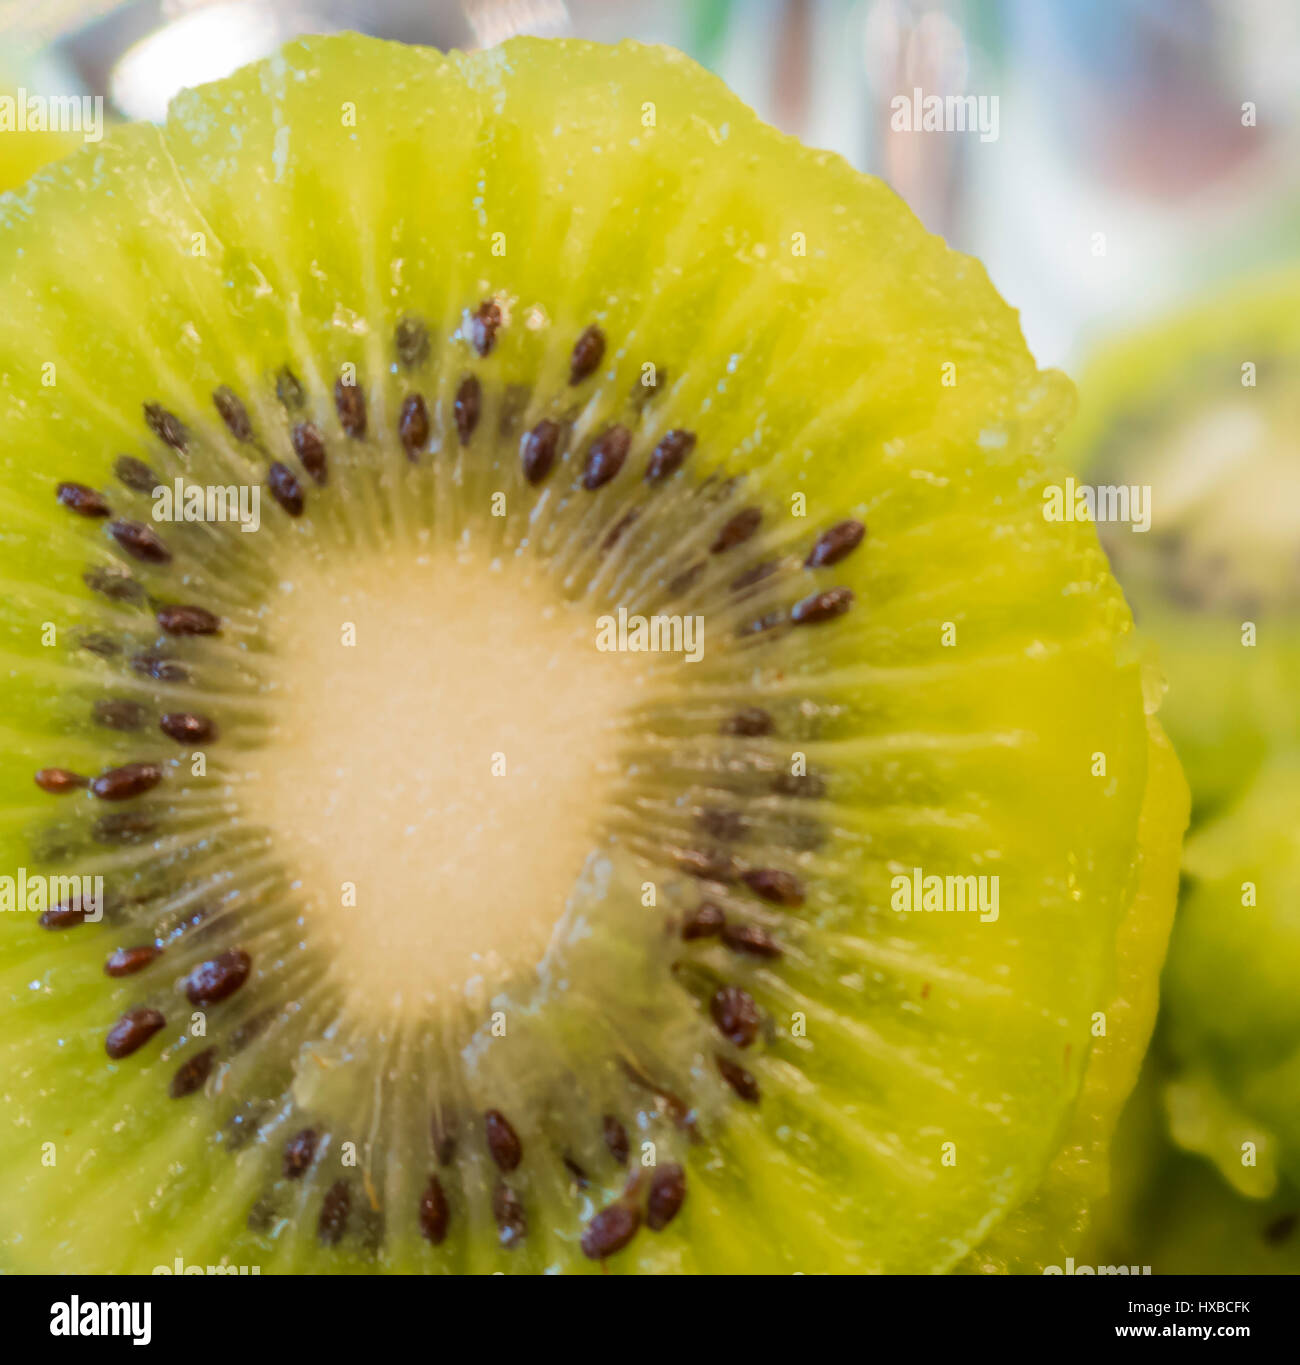 Slices of kiwi fruit on kiwi background Stock Photo